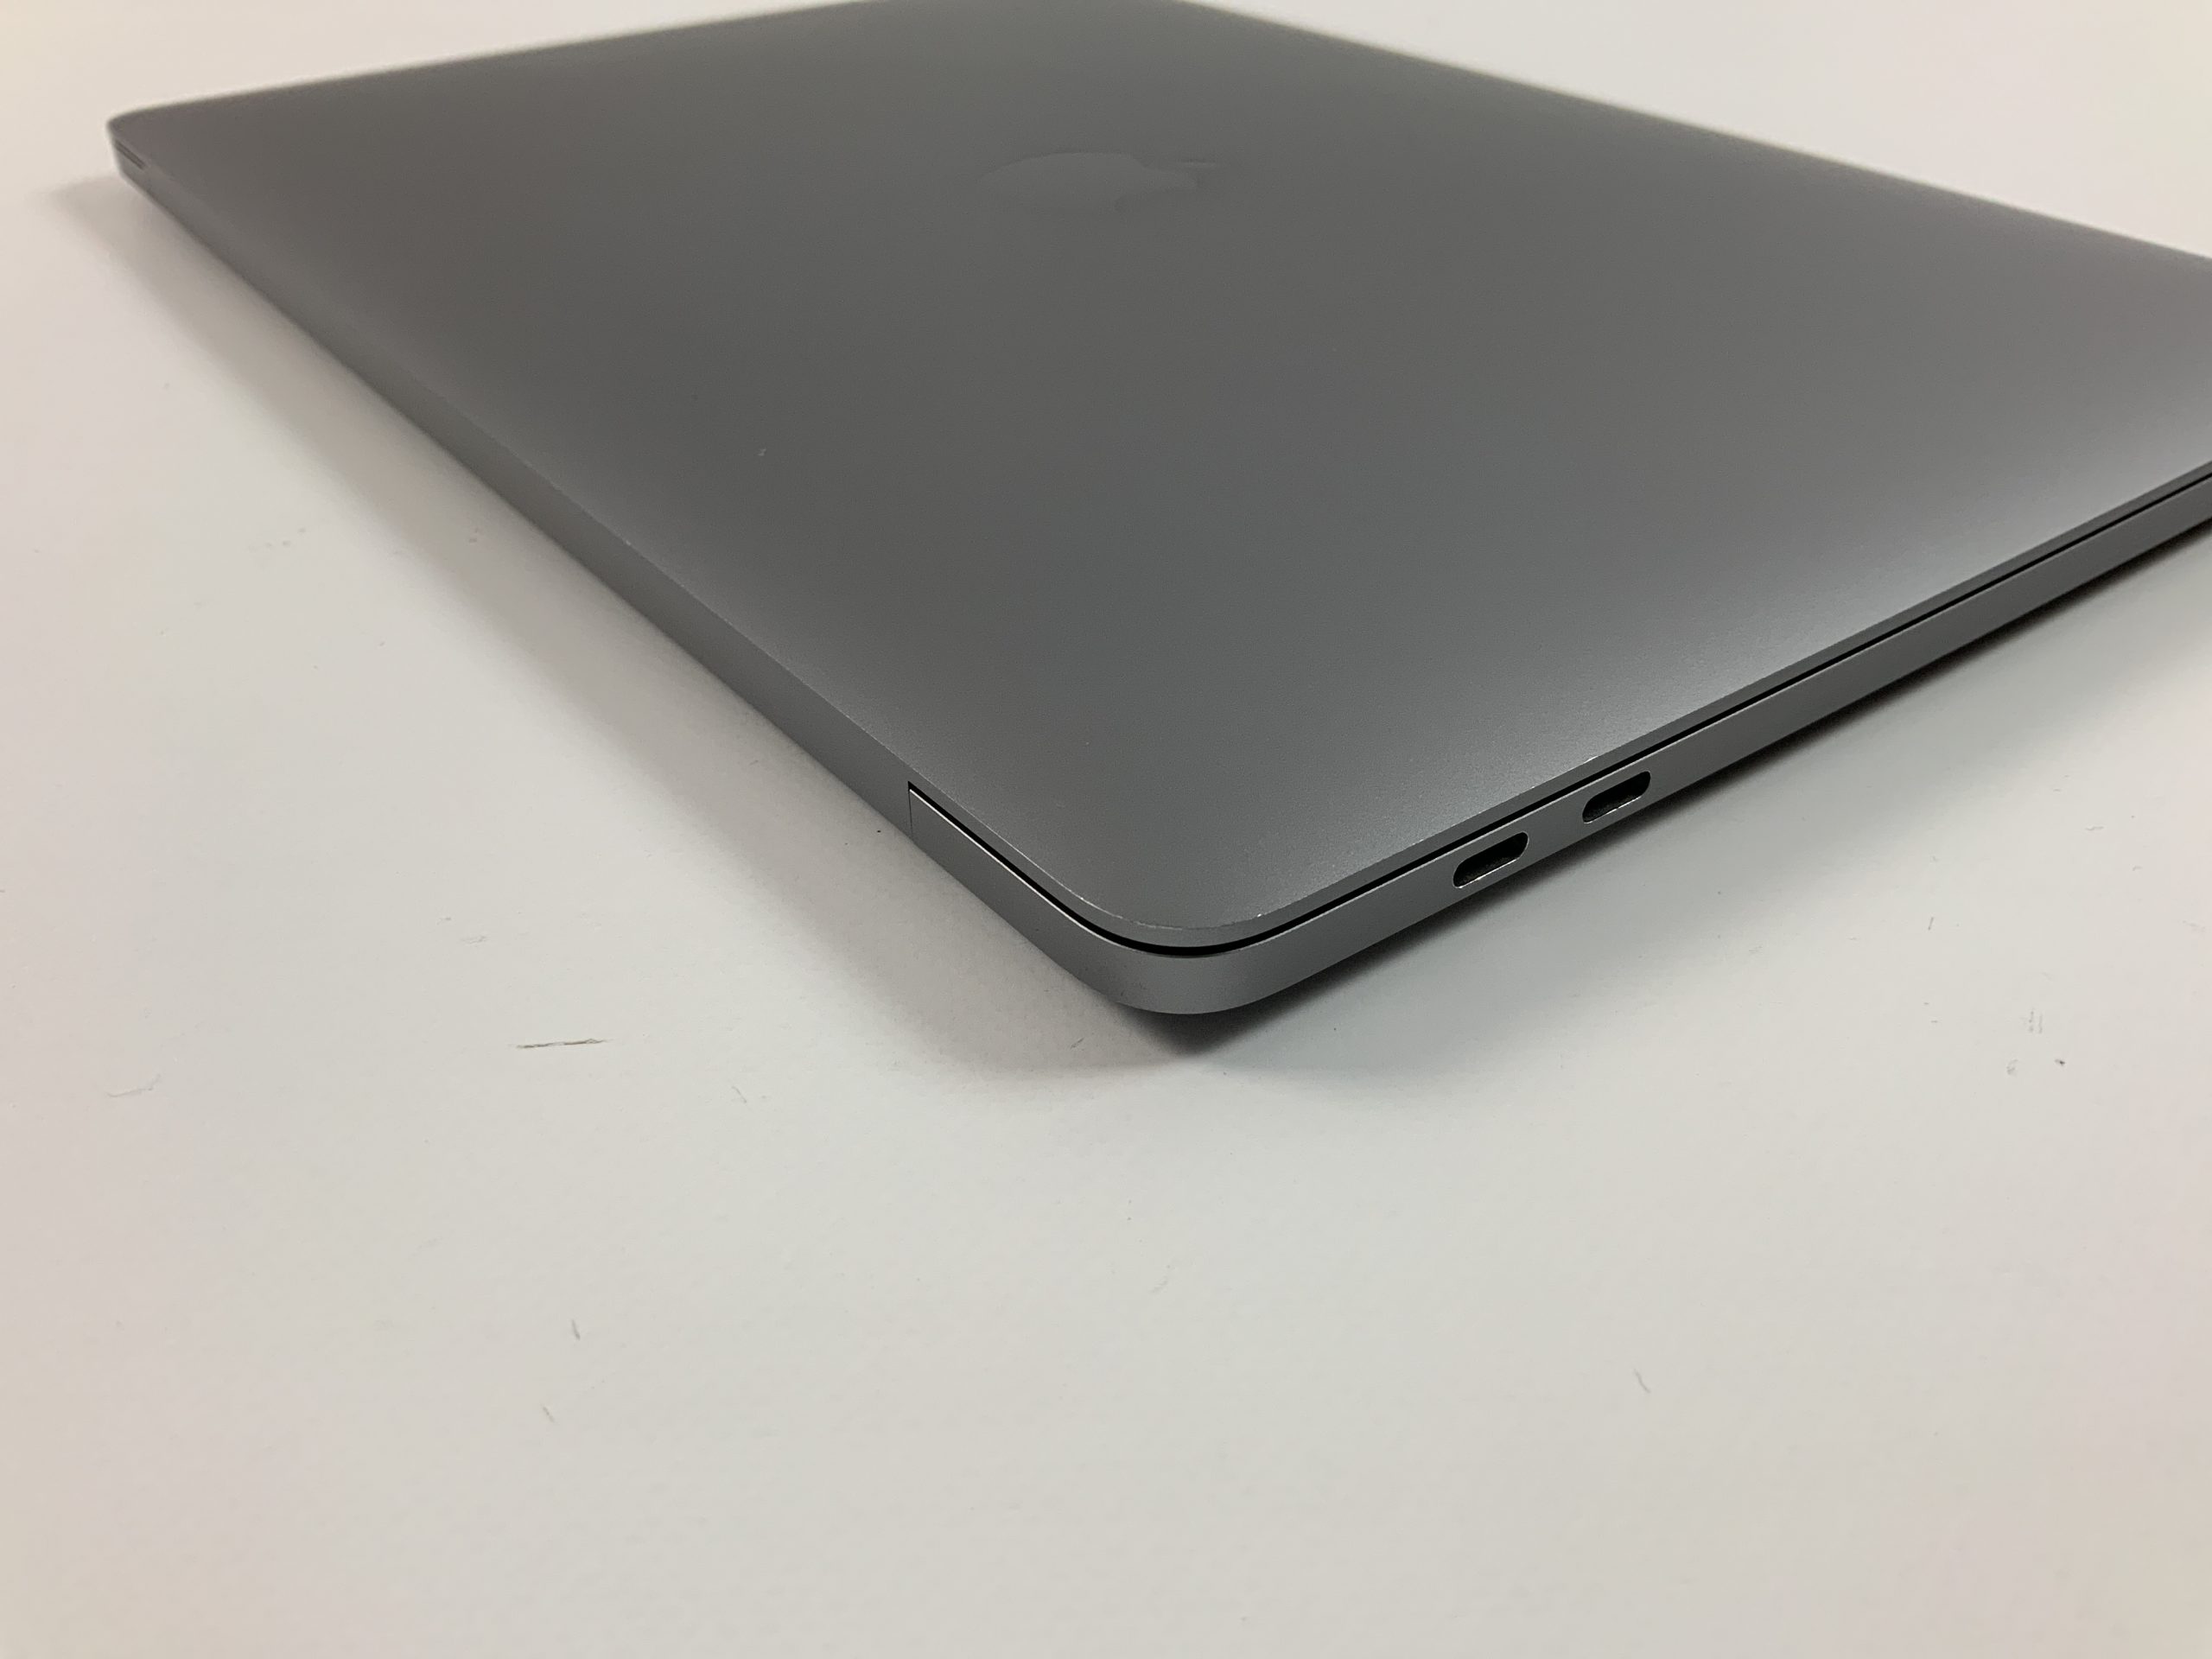 MacBook Pro 13" 4TBT Mid 2018 (Intel Quad-Core i7 2.7 GHz 16 GB RAM 1 TB SSD), Space Gray, Intel Quad-Core i7 2.7 GHz, 16 GB RAM, 1 TB SSD, bild 4